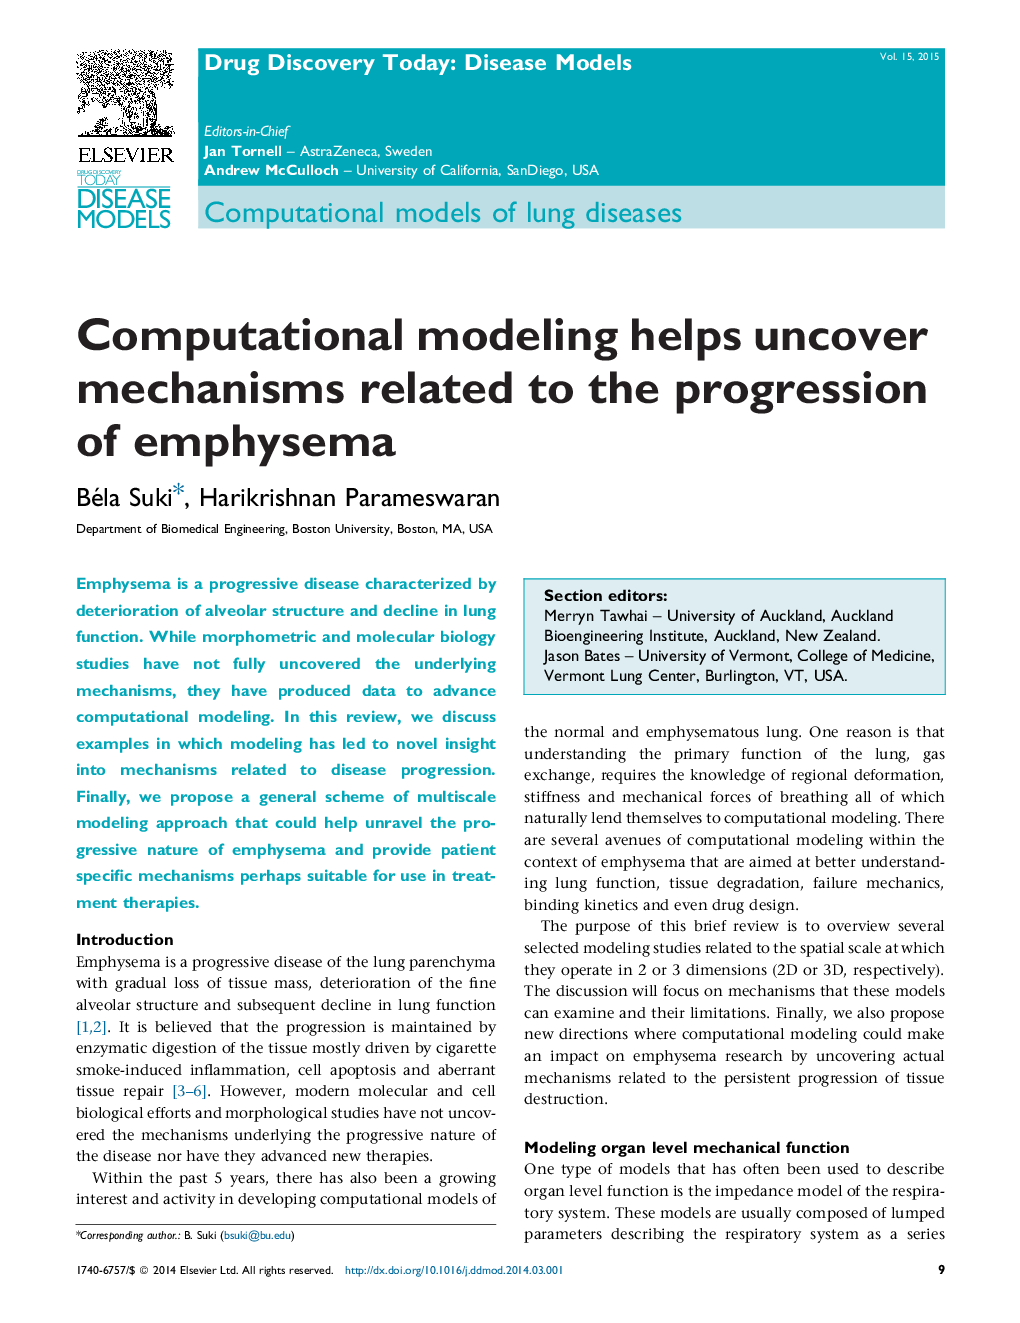 مدل سازی محاسباتی به شناسایی مکانیزم های مرتبط با پیشرفت آمفیزم کمک می کند 